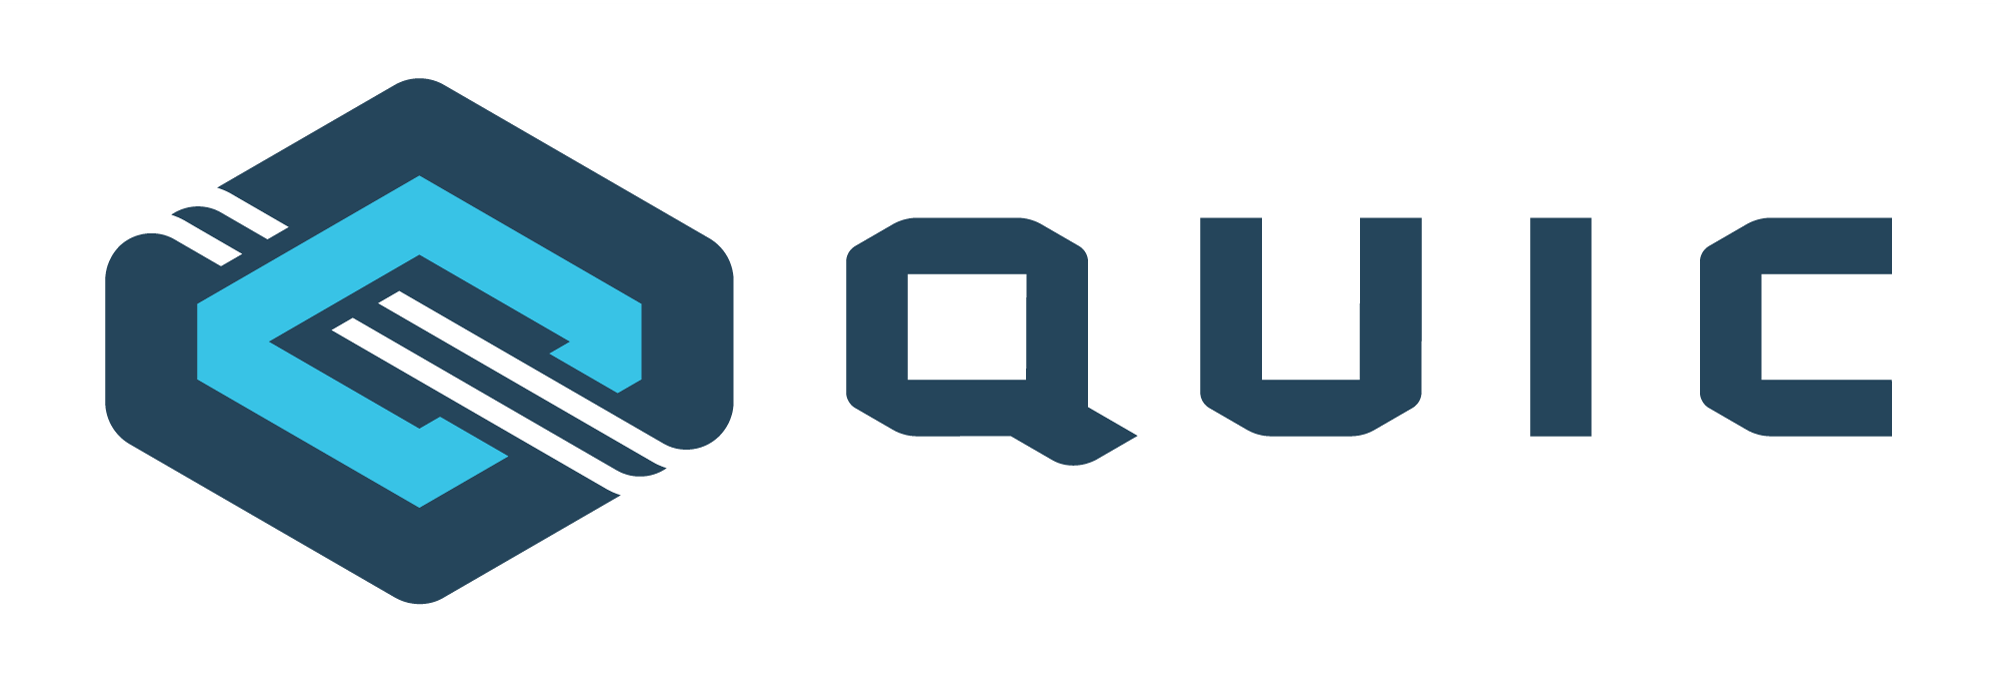 QUIC (Quick UDP Internet Connections) و QUIC چیست